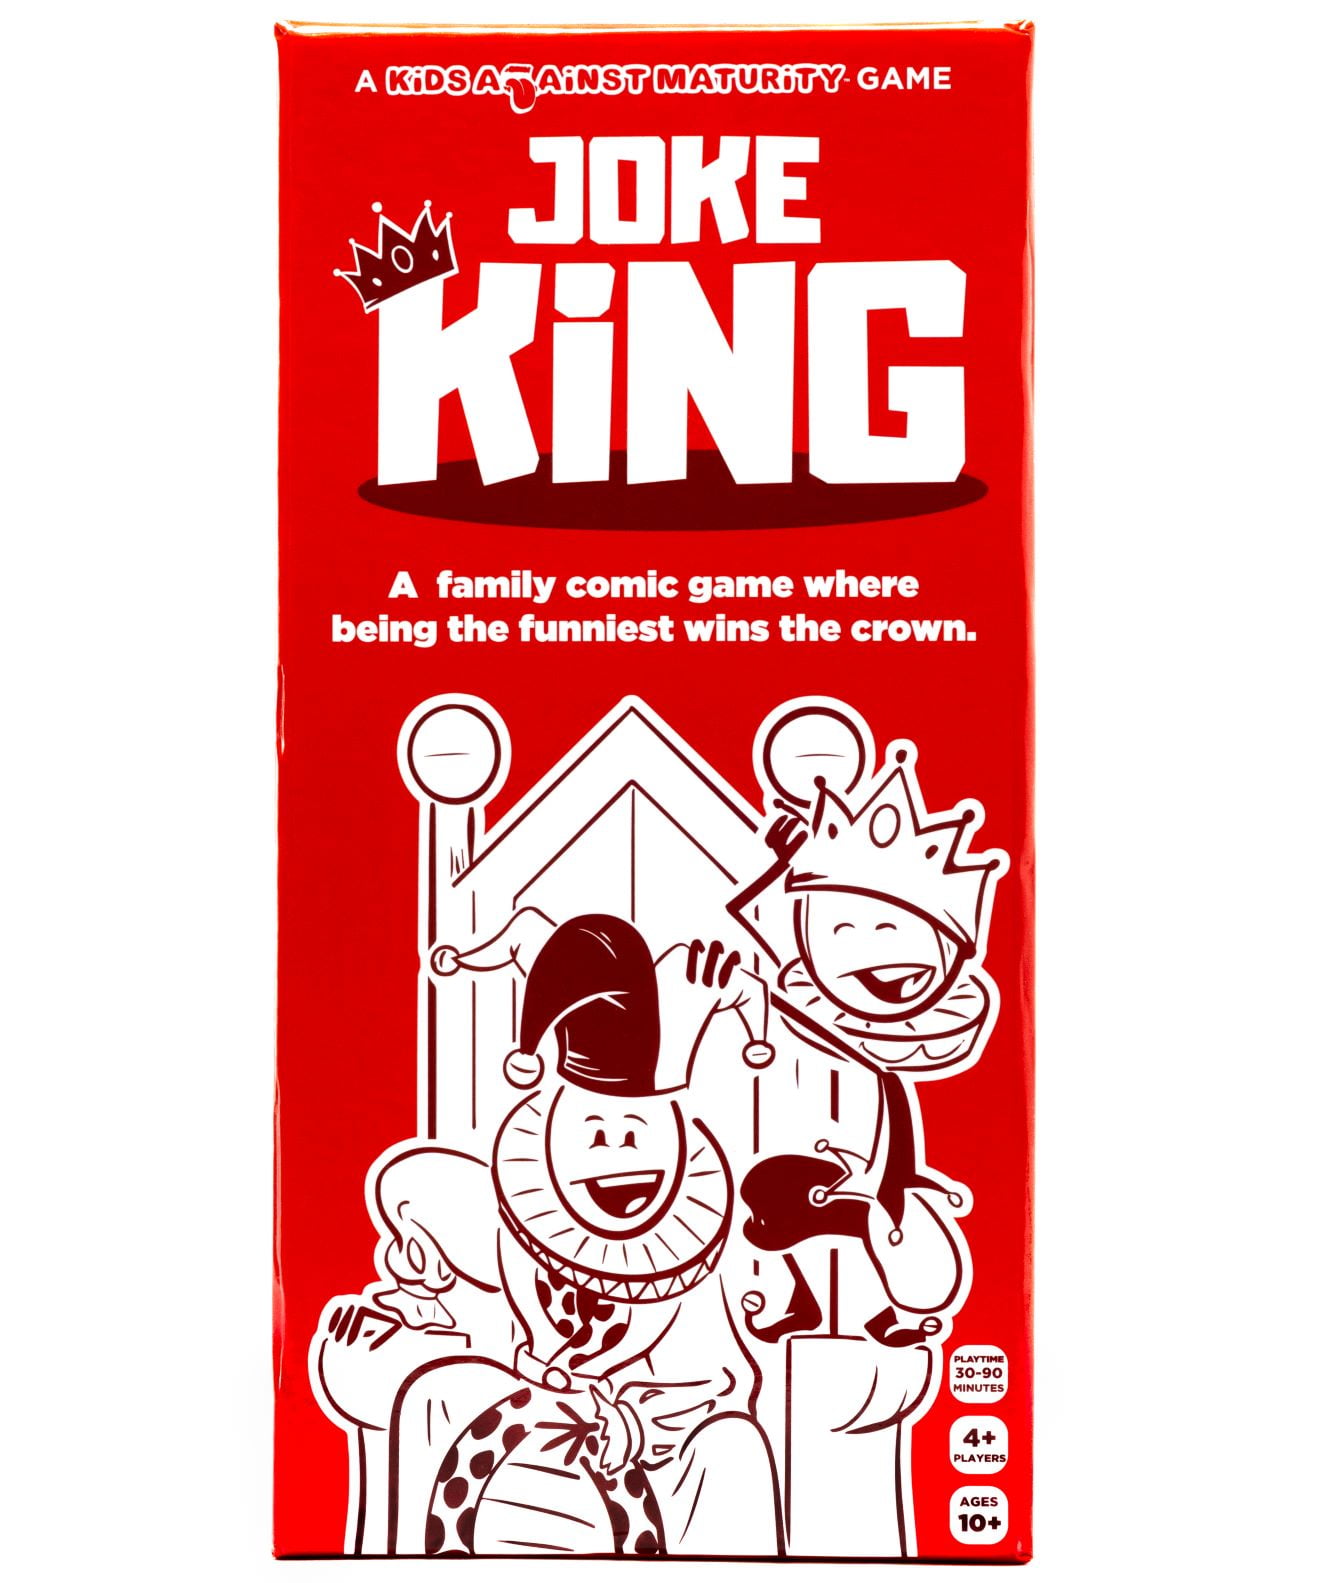 Shotgun King Card Game for Game Night, Parties, Camping